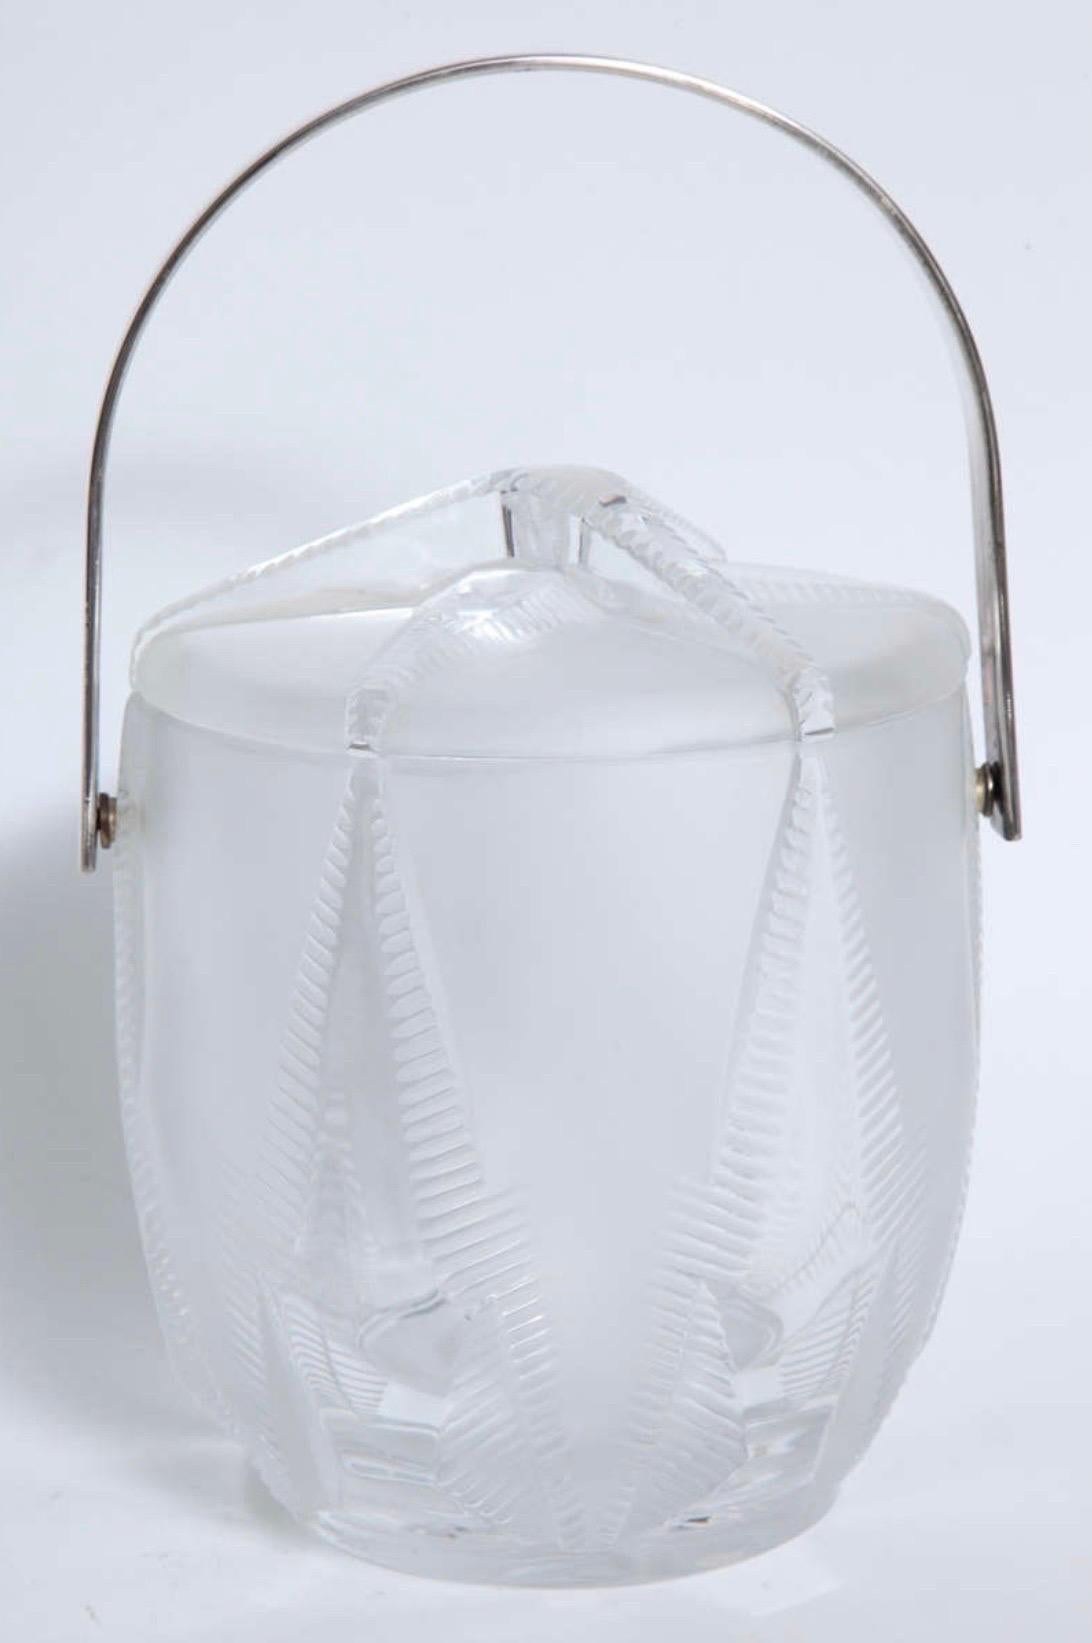 Magnifique seau à glace Thermidor Lalique avec couvercle, poignée nickelée et étoile de mer en relief. Le revêtement est amovible et le récipient en verre peut servir de seau à champagne ou à vin.
Signé Lalique France